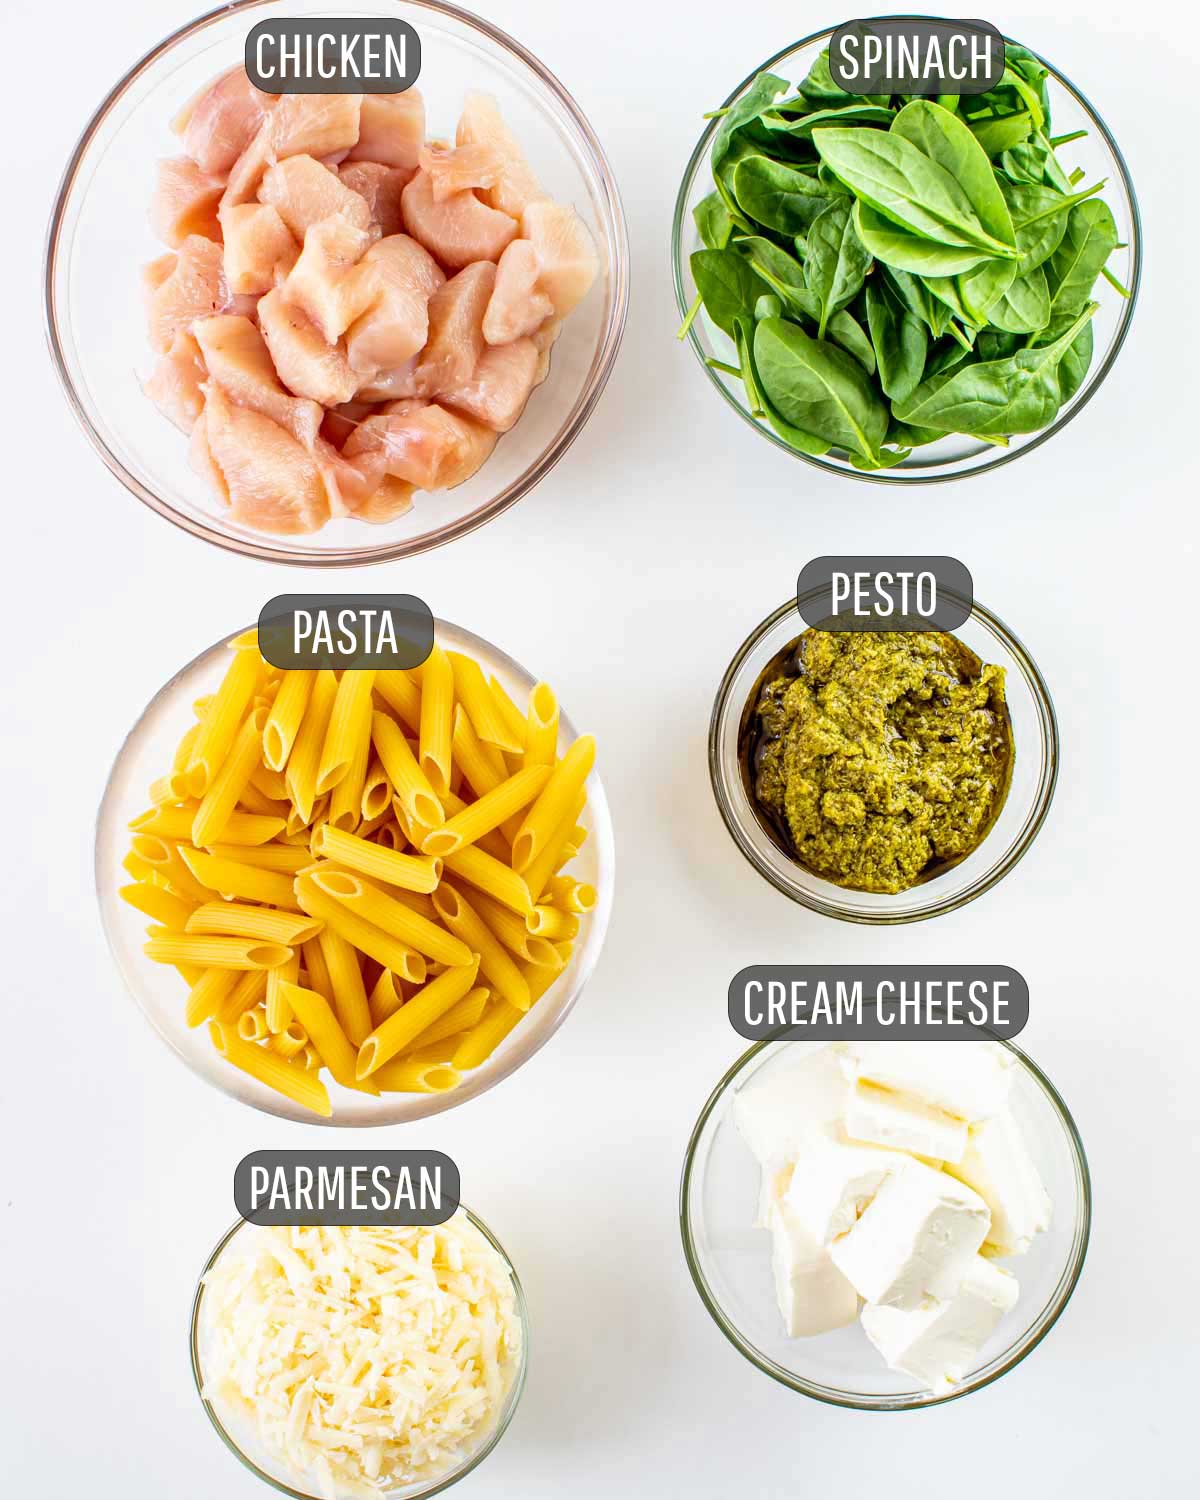 ingredients needed to make creamy pesto chicken pasta.